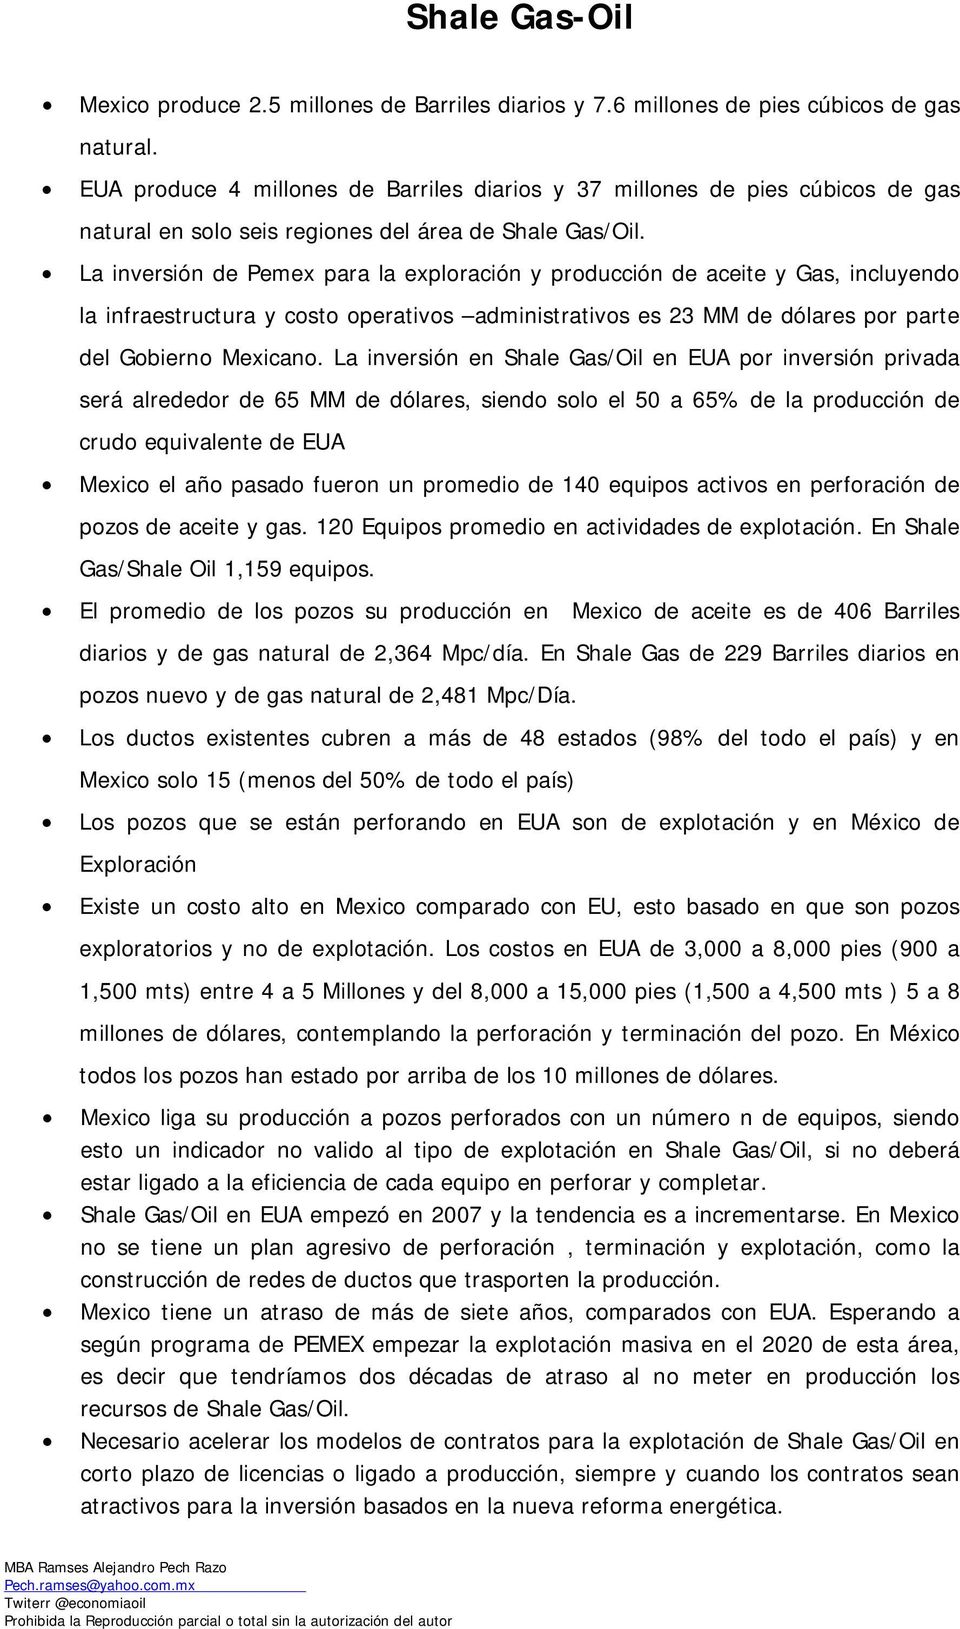 La inversión de Pemex para la exploración y producción de aceite y Gas, incluyendo la infraestructura y costo operativos administrativos es 23 MM de dólares por parte del Gobierno Mexicano.